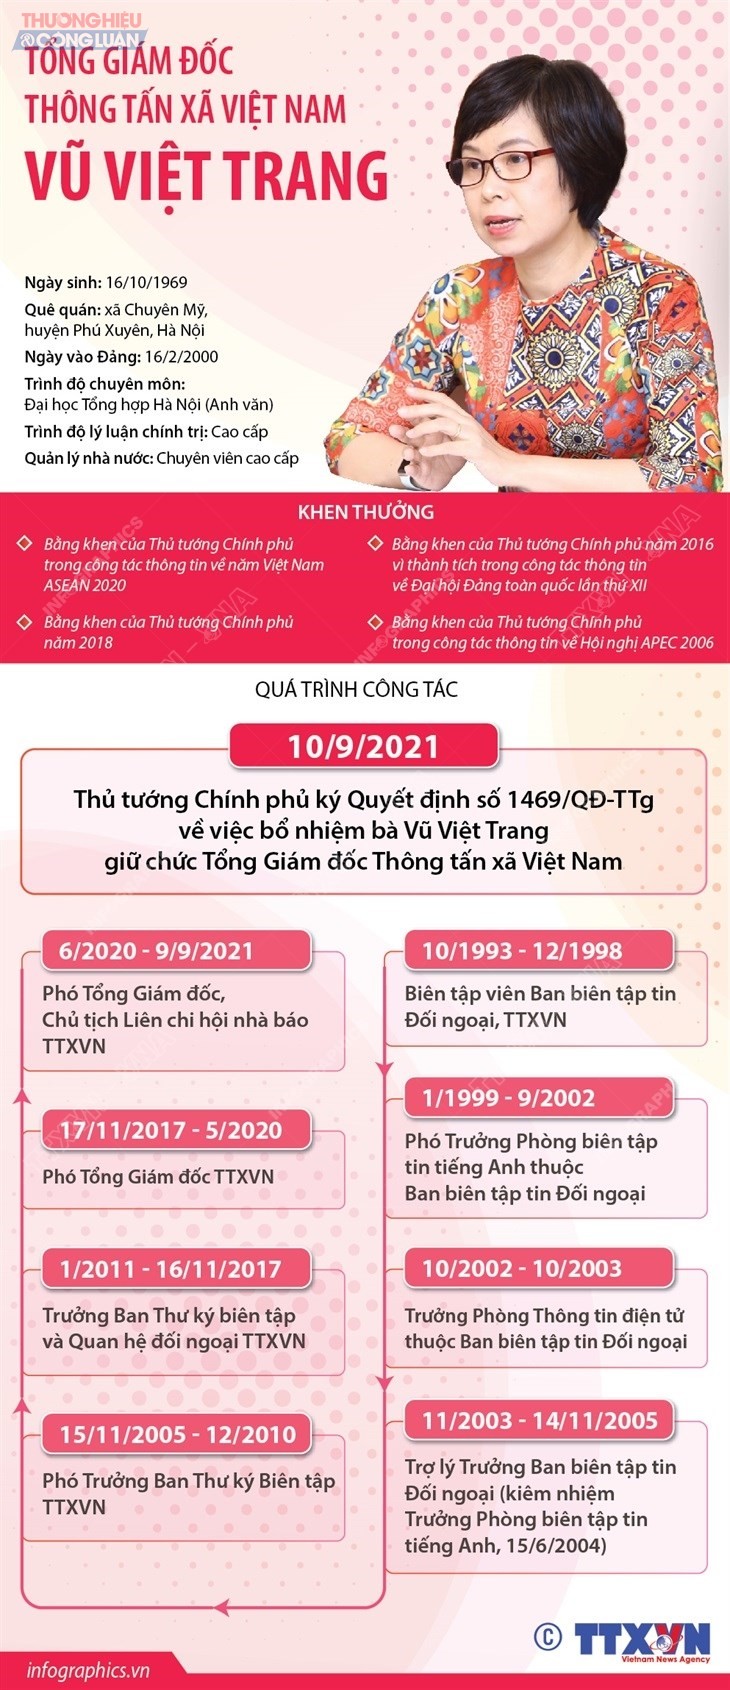 Tổng Giám đốc Thông tấn xã Việt Nam Vũ Việt Trang (Theo Infographics TTXVN).